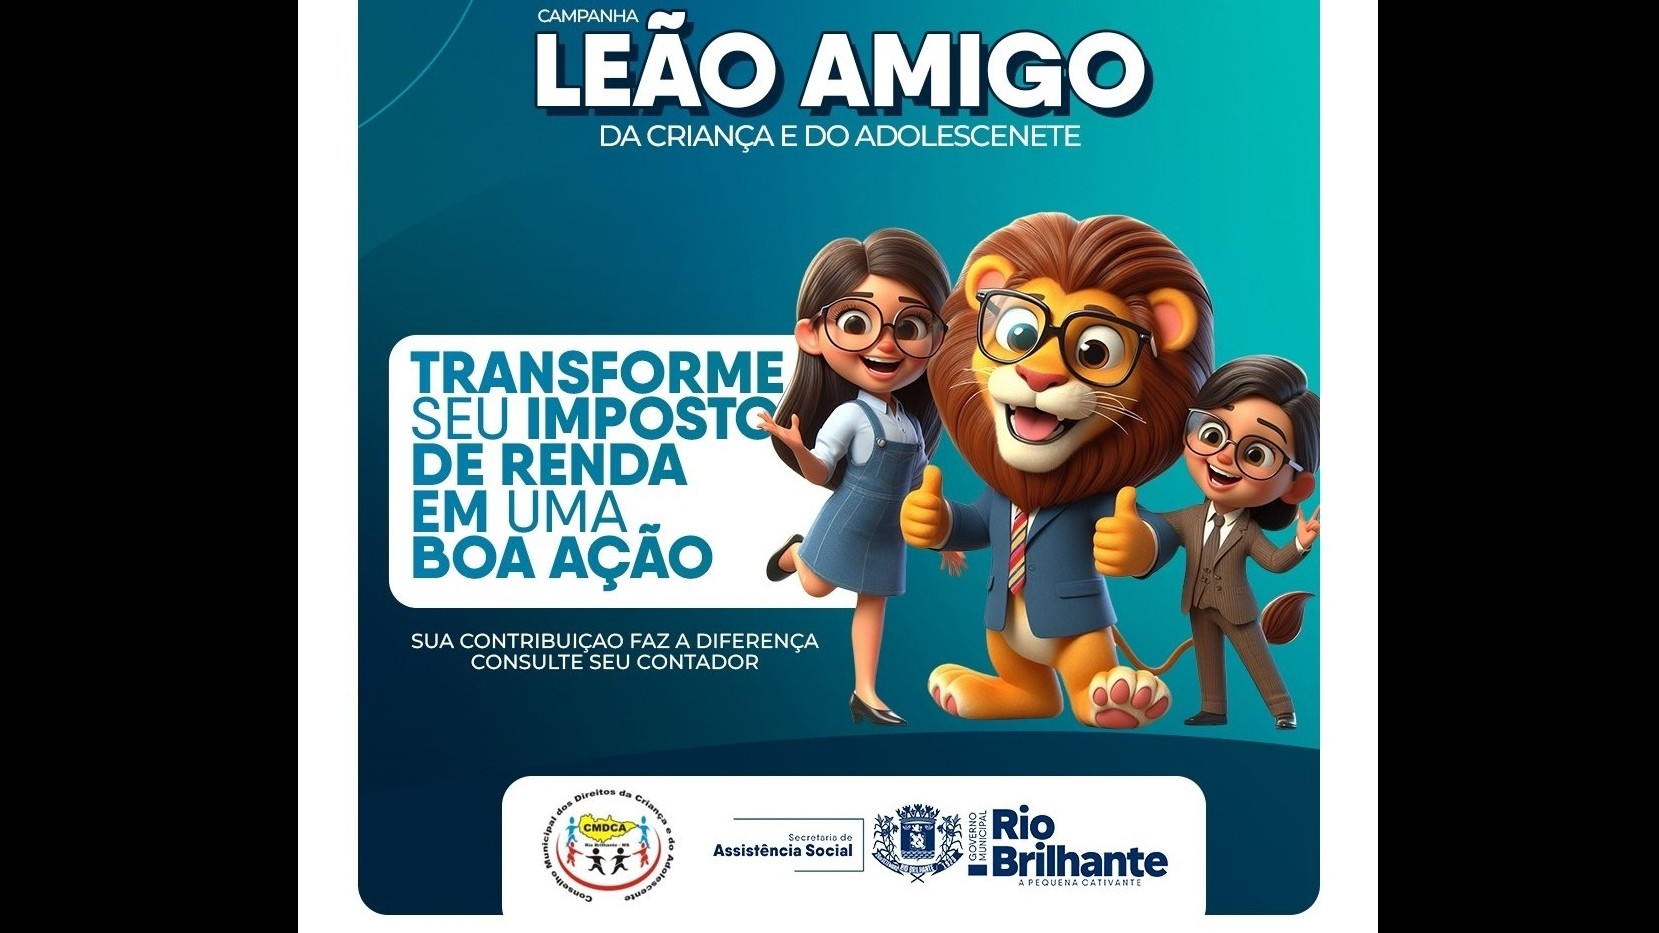 Governo Municipal de Rio Brilhante/MS realiza campanha “LEÃO AMIGO DA CRIANÇA E DO ADOLESCENTE”